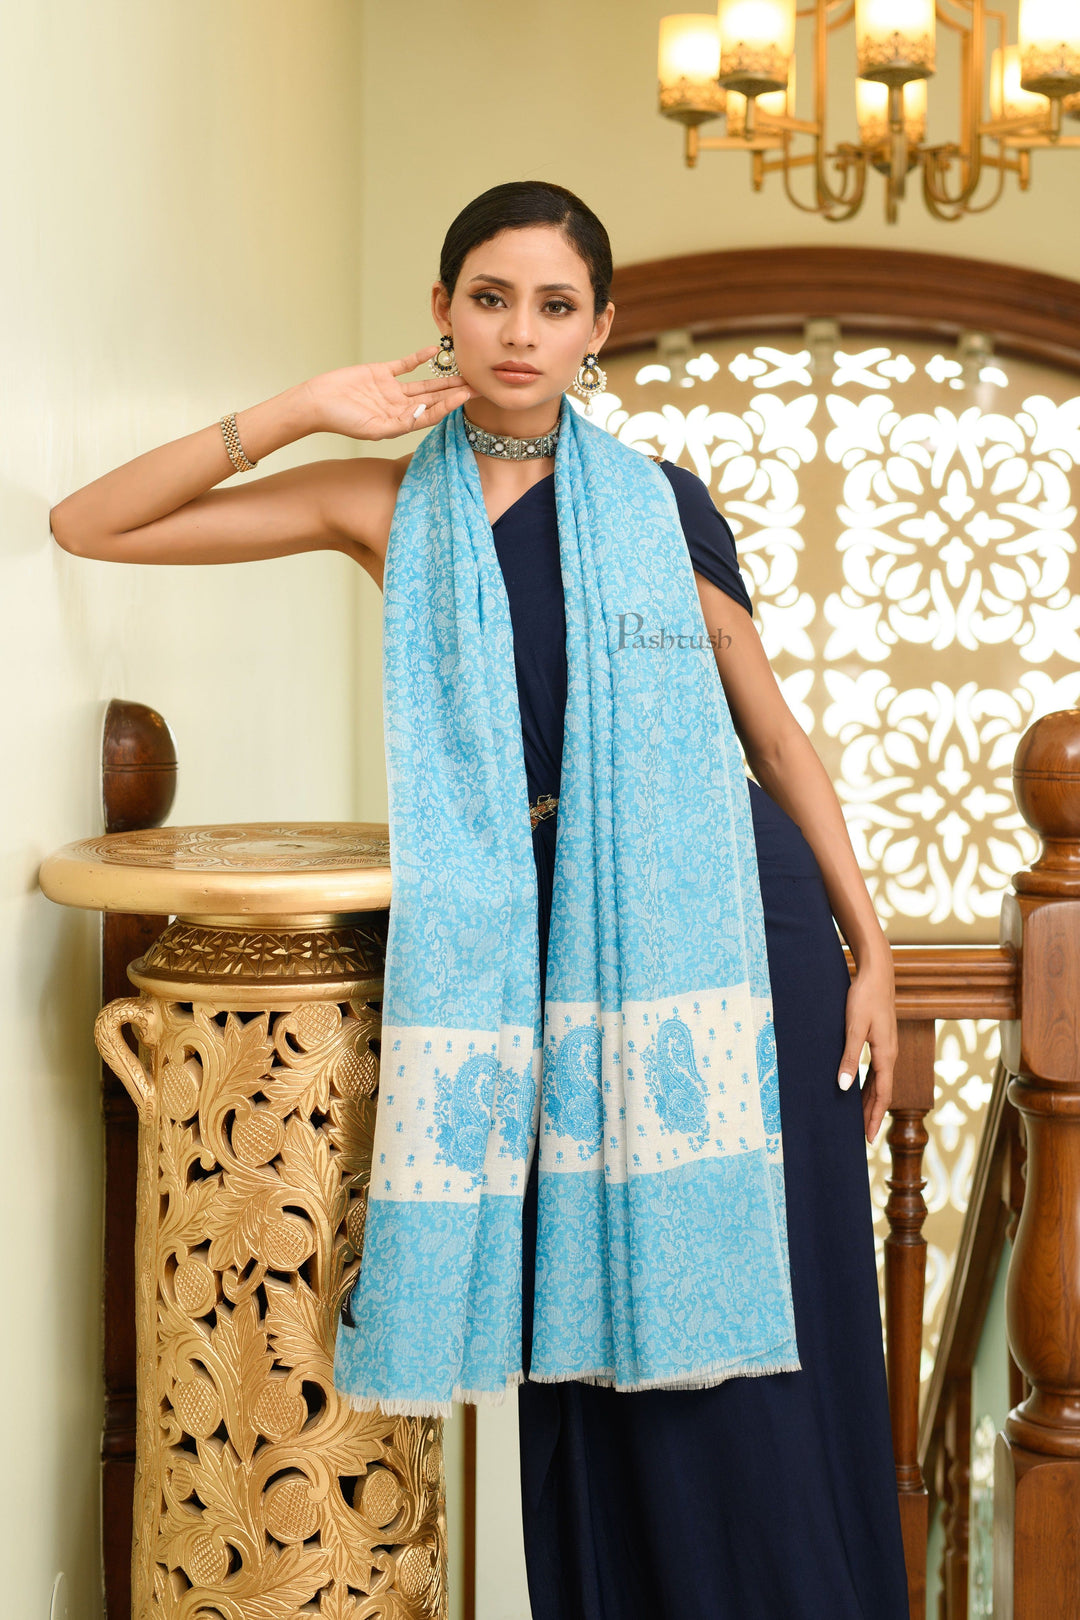 Pashtush India Womens Shawls Pashtush Womens Extra Fine Wool Shawl, Soft Tone On Tone Embroidery Design, Blue